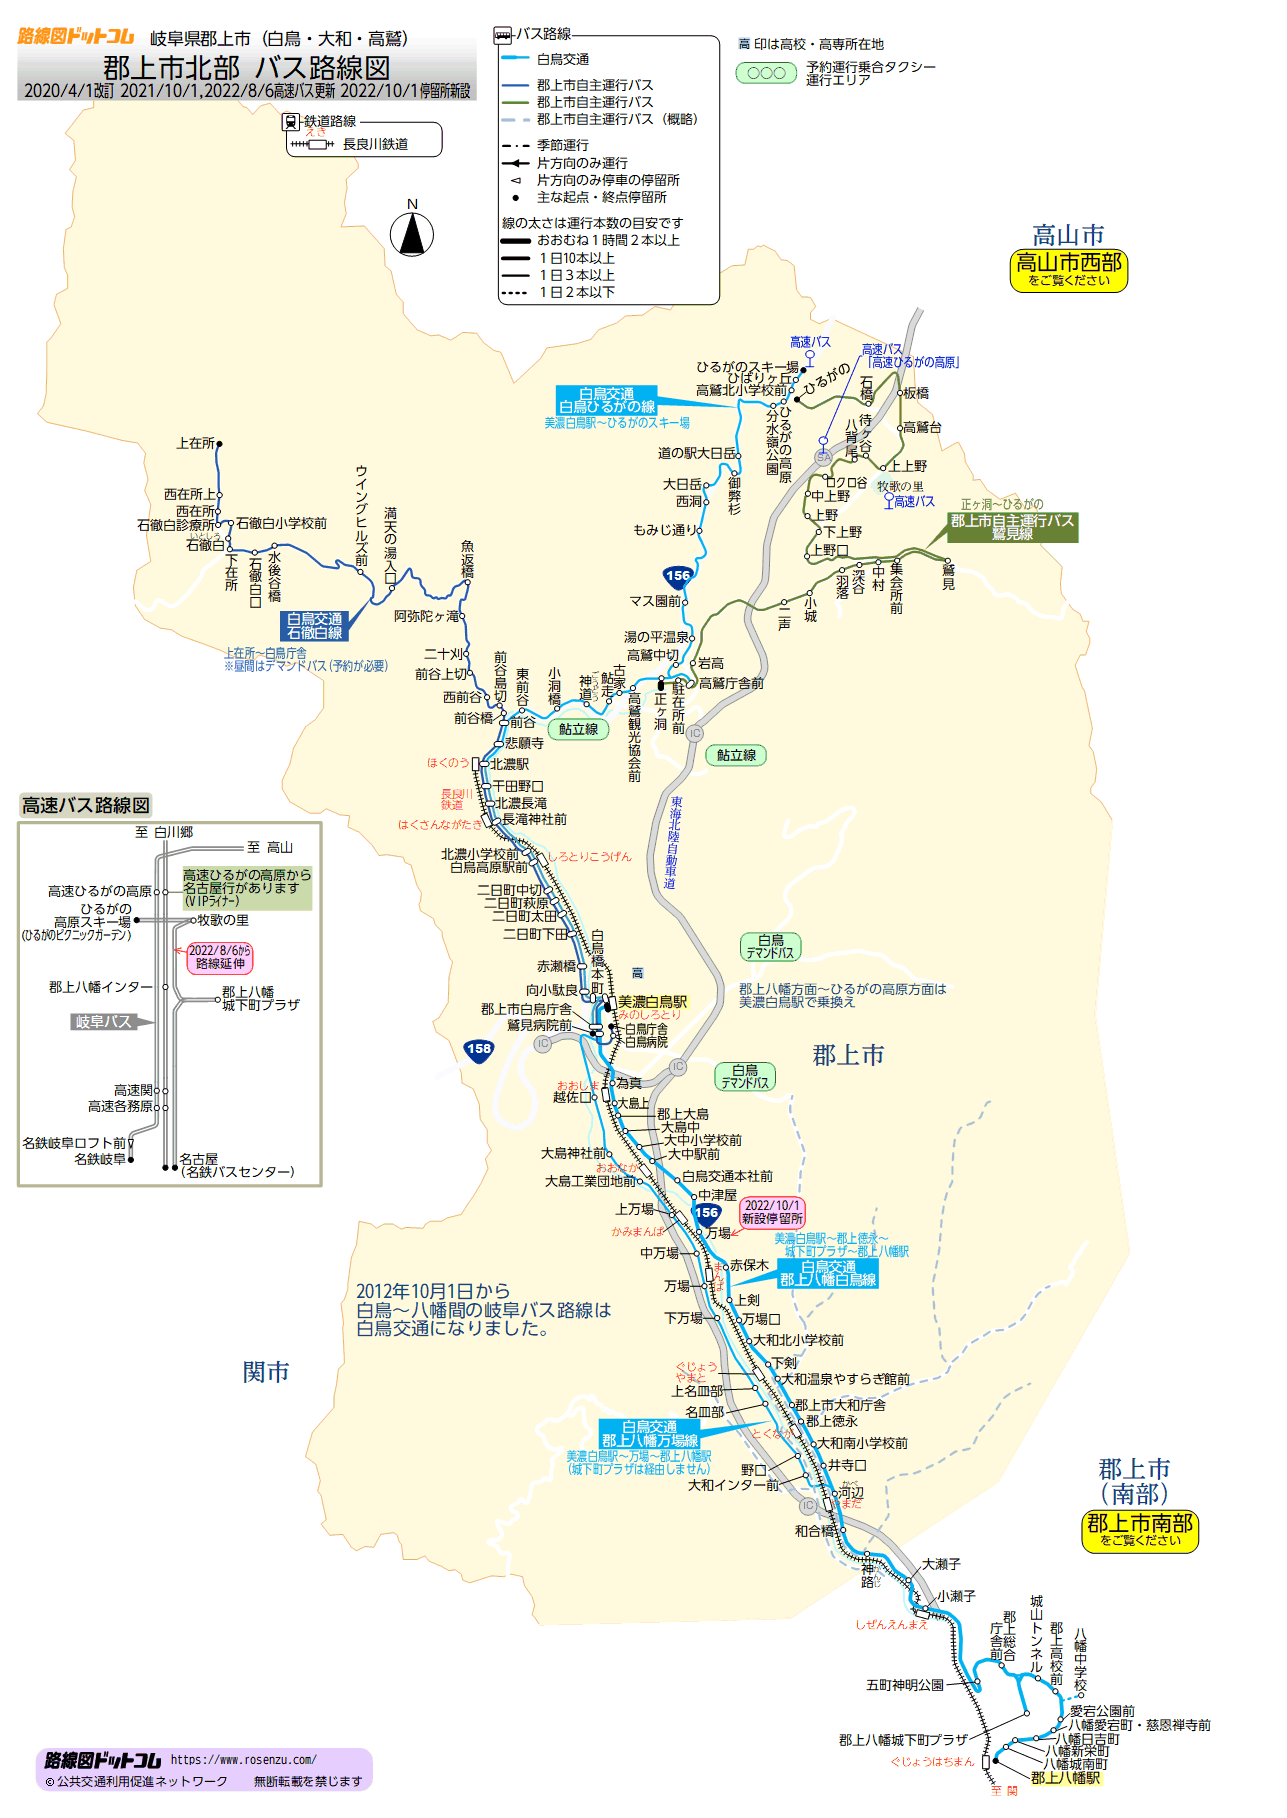 郡上市北部バス路線図